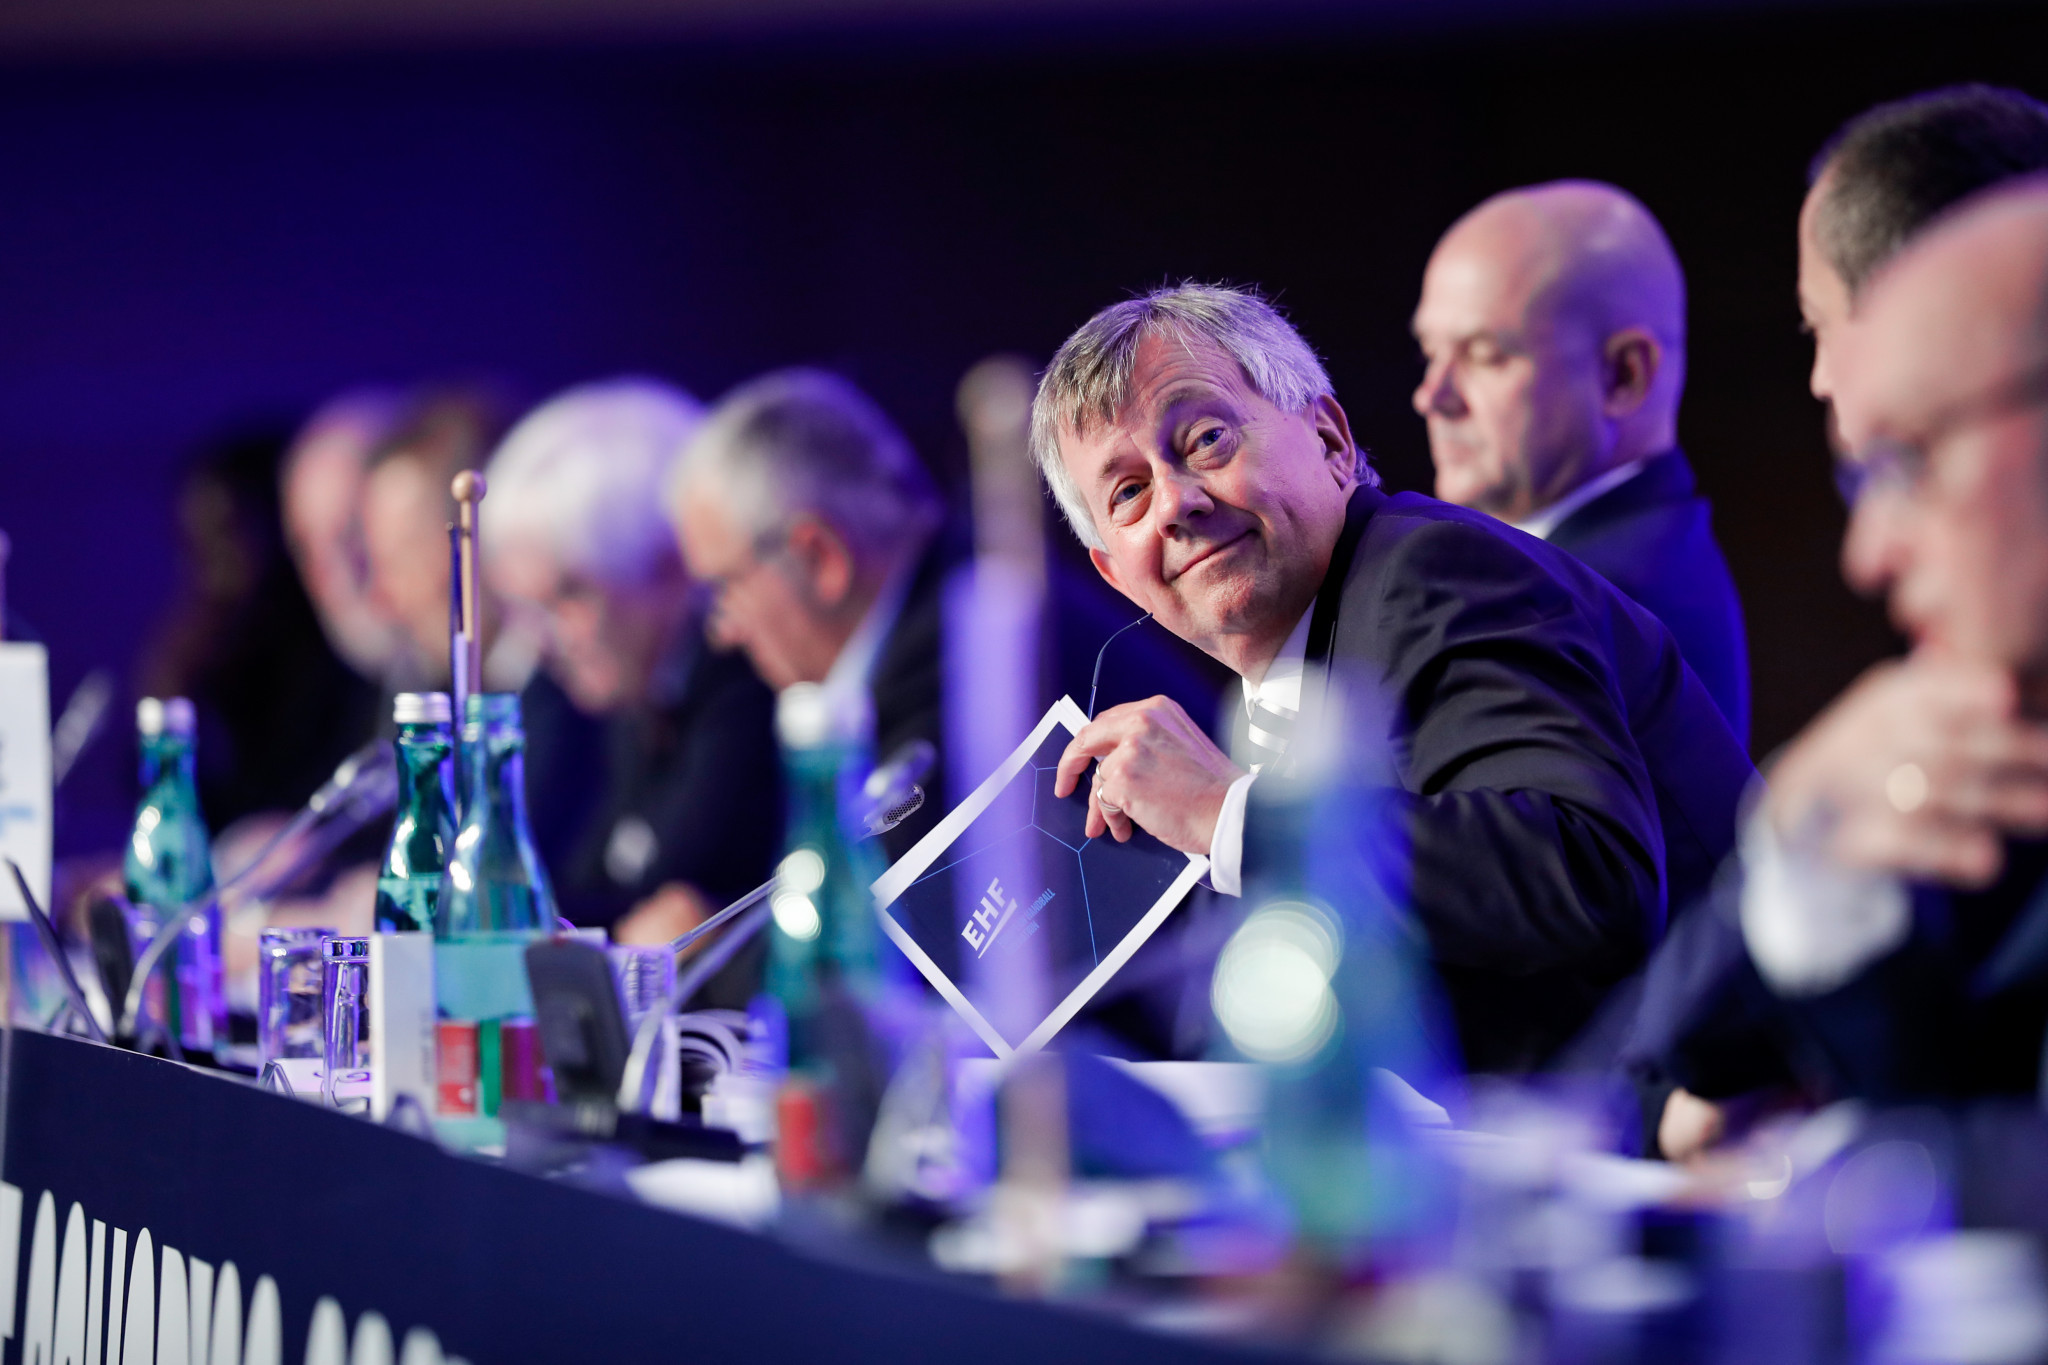 Michael Wiederer became EHF President in 2016 after serving as secretary general since 1992 ©Uros Hocevar / Kolektiffimages